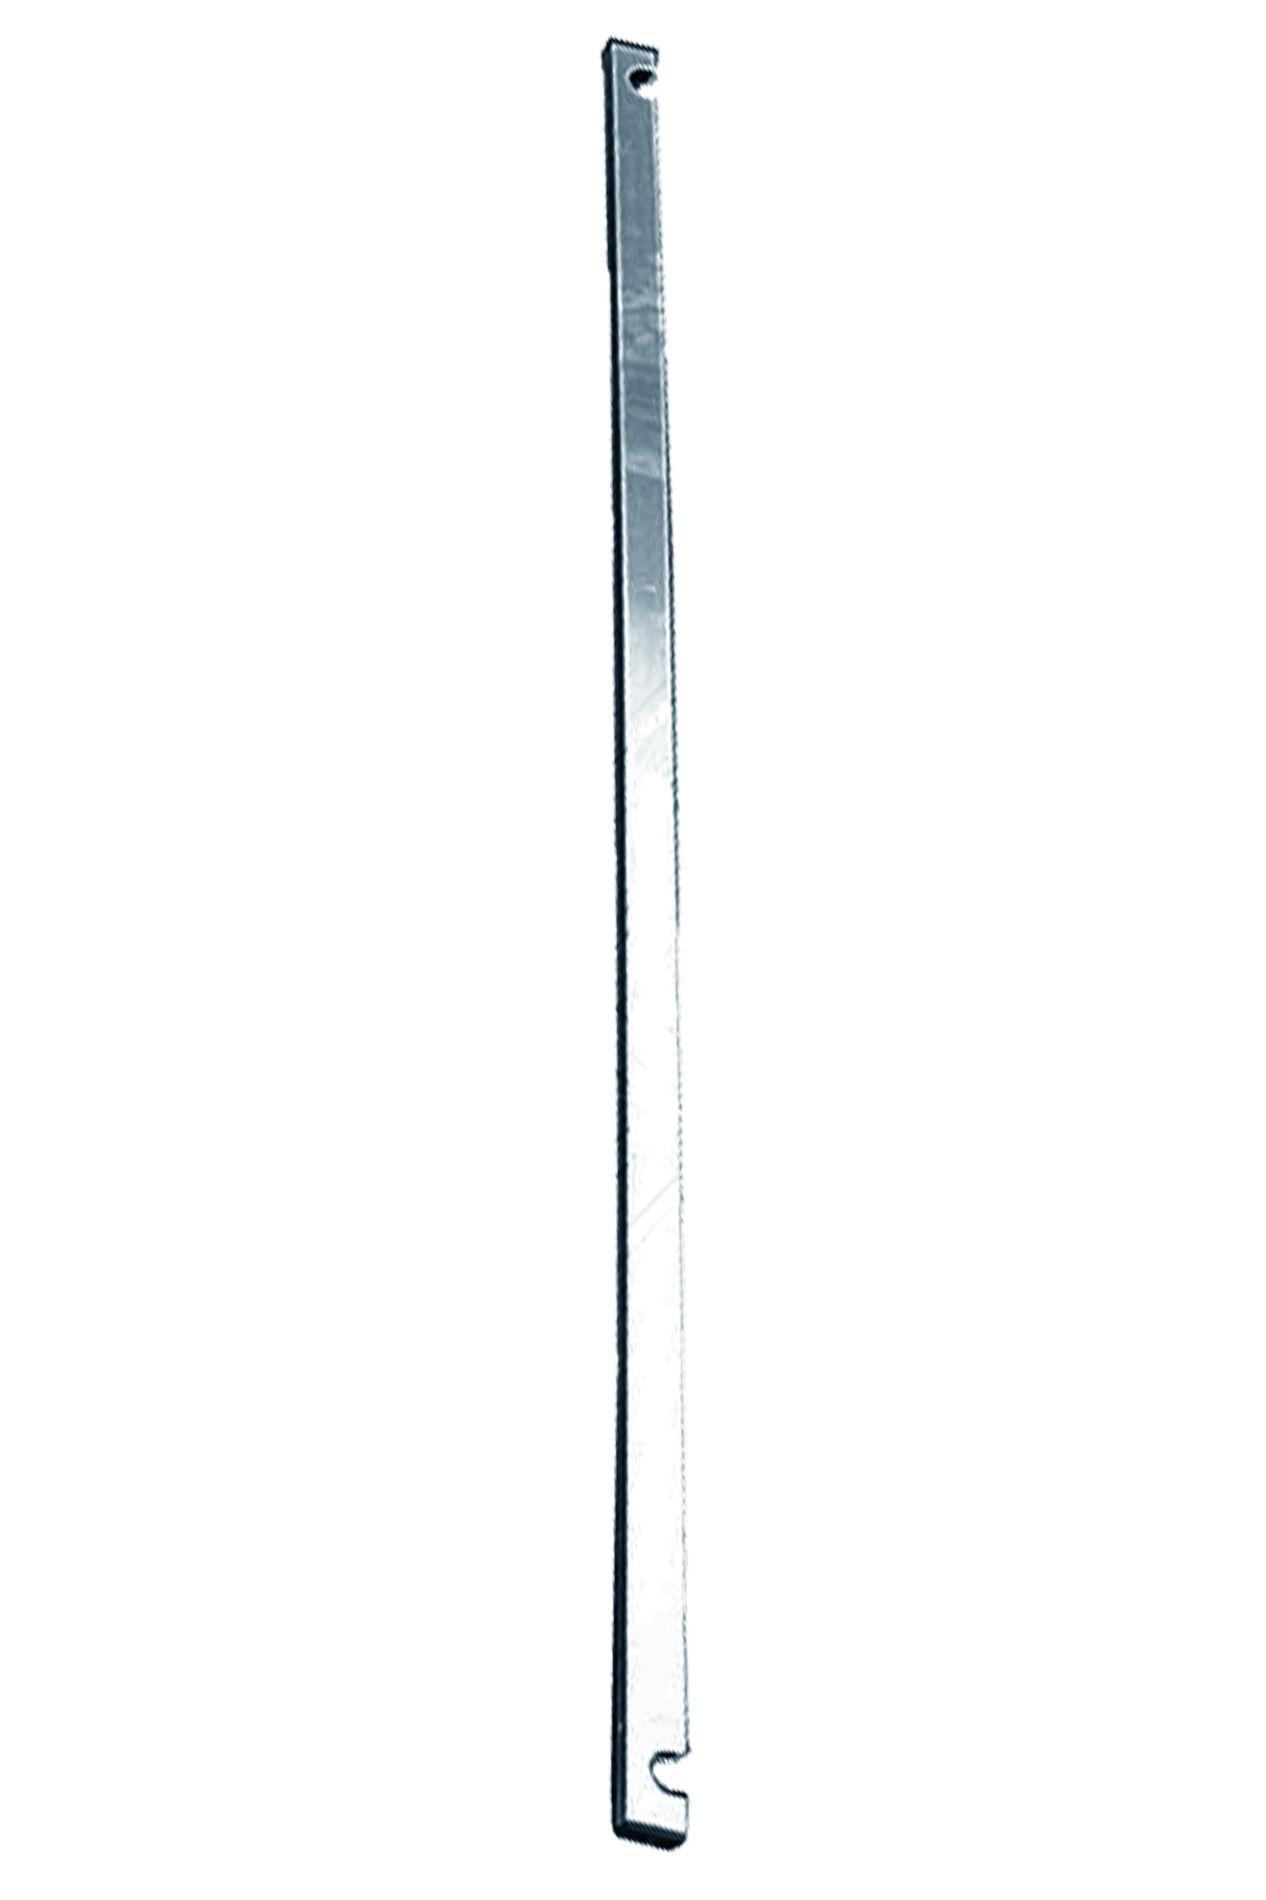 Дополнительное изображение Stabilo серии 1000 рабочая высота 6,2 м, размер площадки (2x0.75 м)